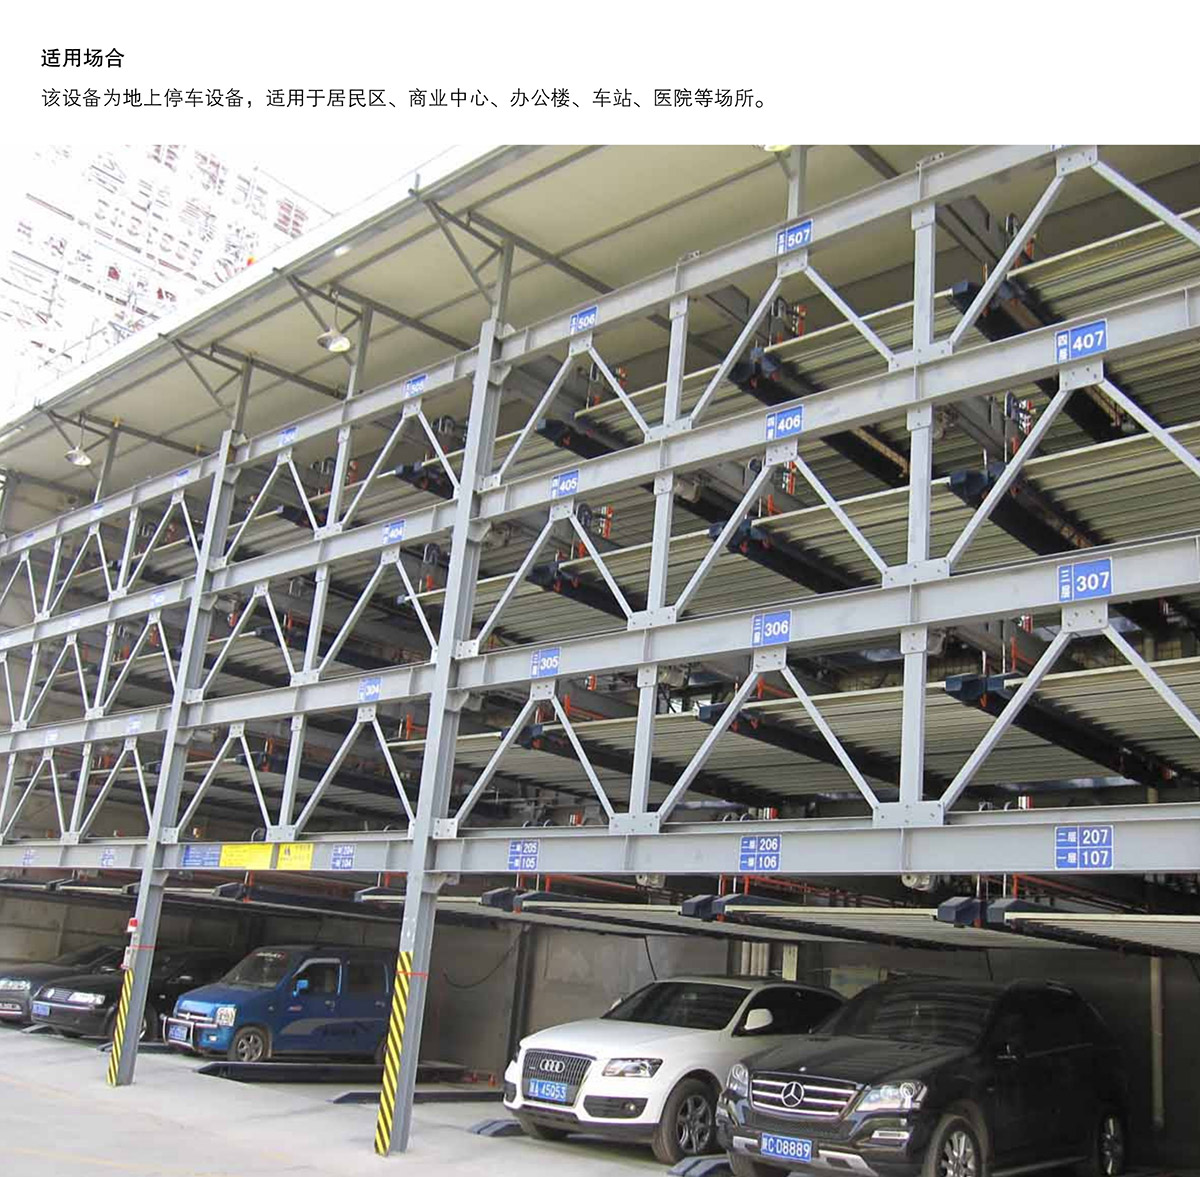 立体停车四至六层PSH4-6升降横移机械停车设备适用场合.jpg